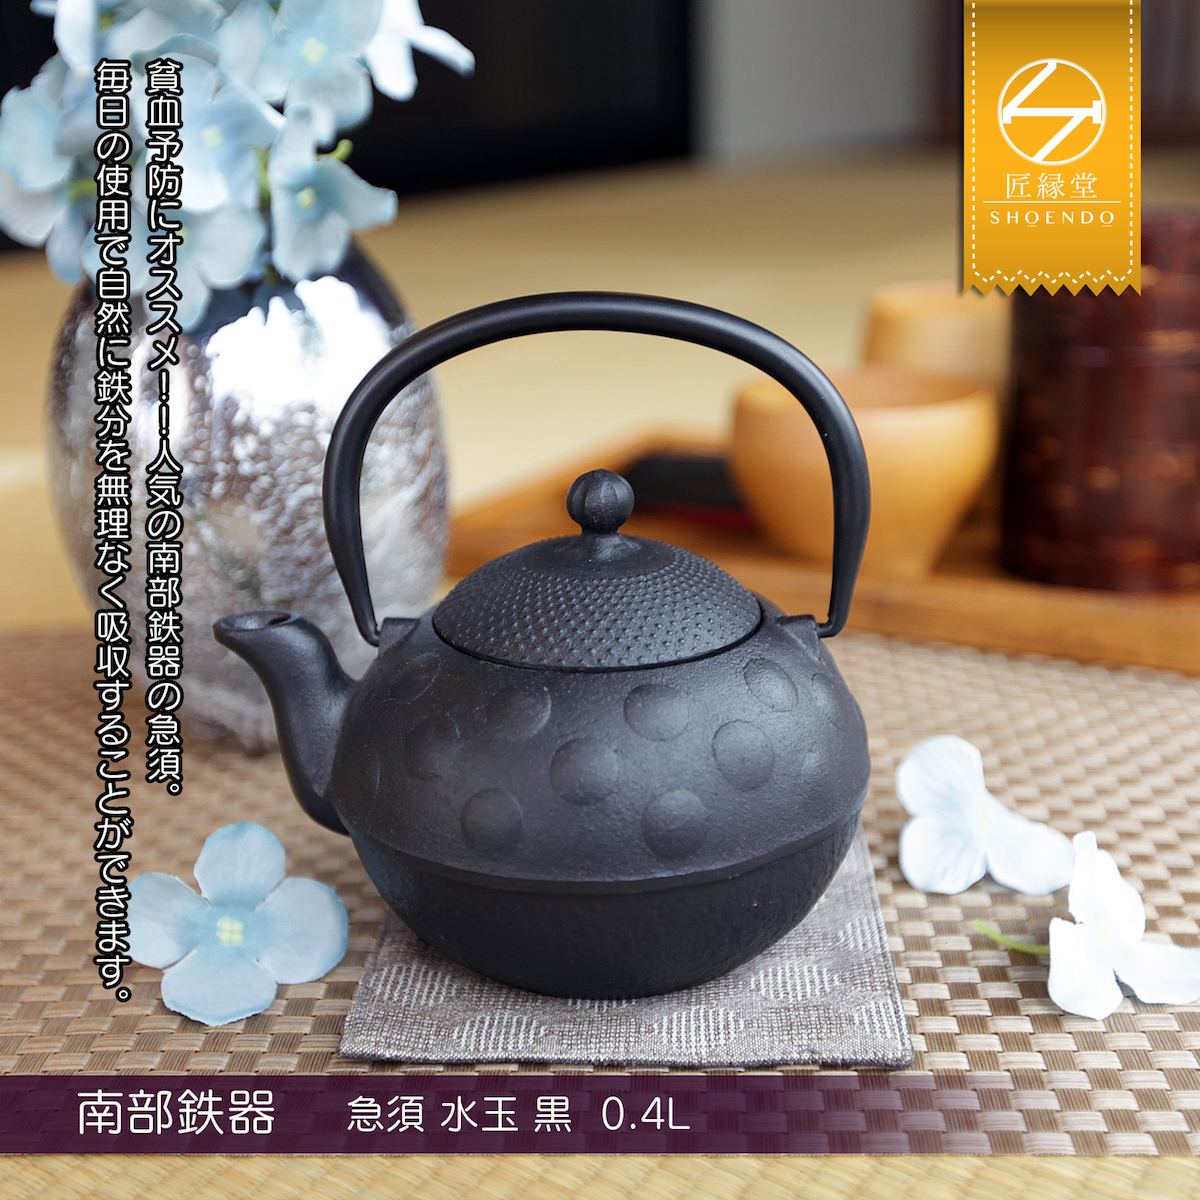 Fujita Kyusu TeaPot Kettle Nanbu Nambu Tekki Ironware Polka Dot 0.4L Japan